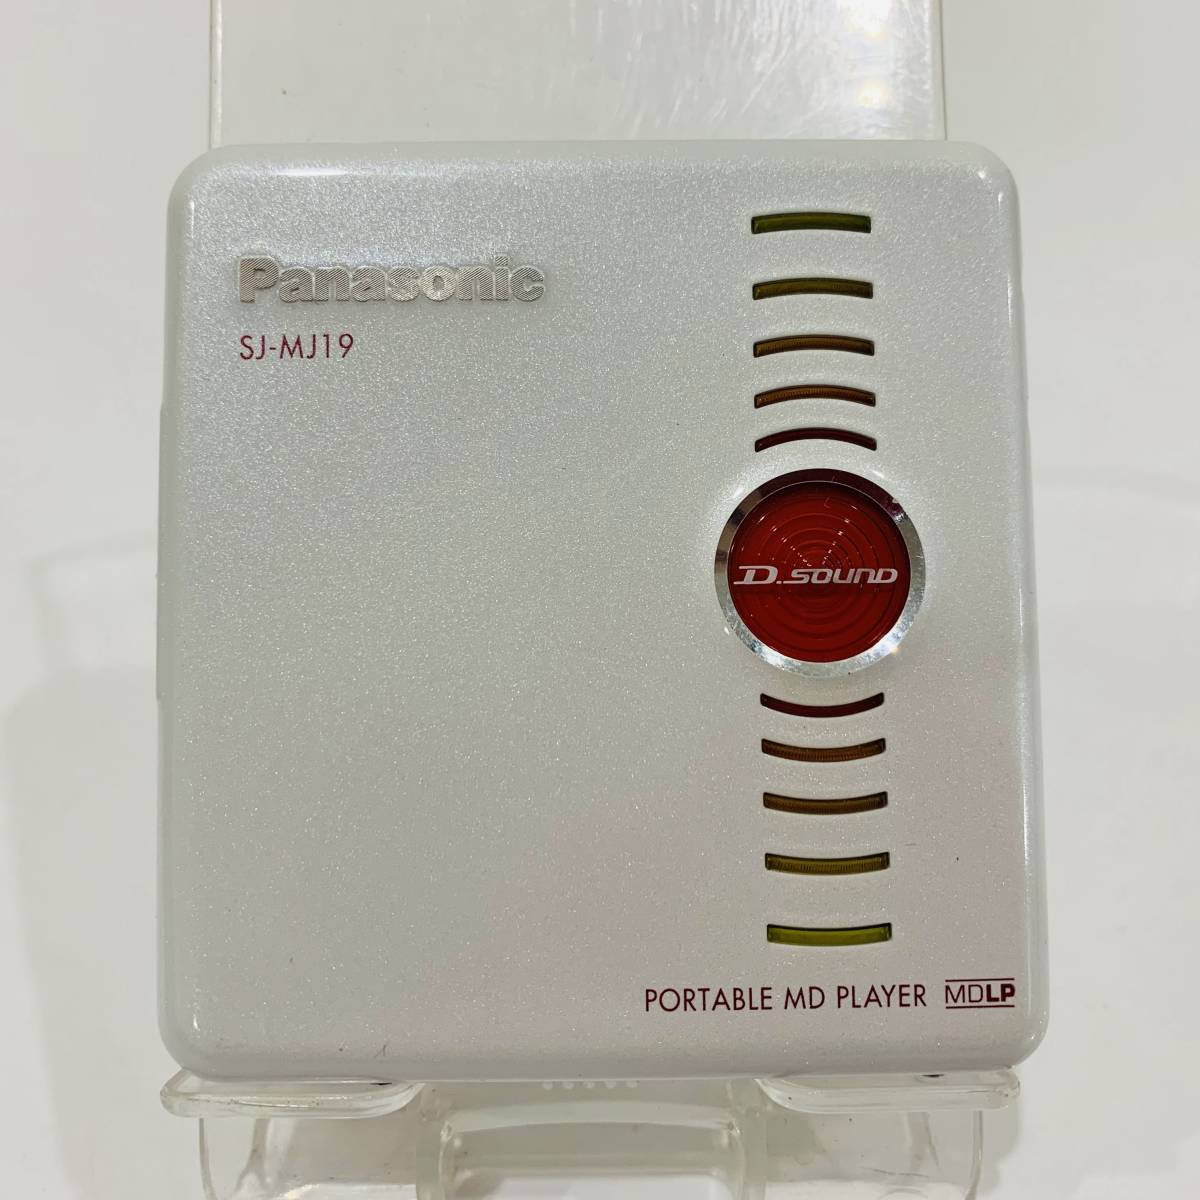 ●パナソニック SJ-MJ19 ポータブルMDプレーヤー Panasonic リモコン クレードル付き 音響機器 音楽 再生 持ち運び S2577_画像2